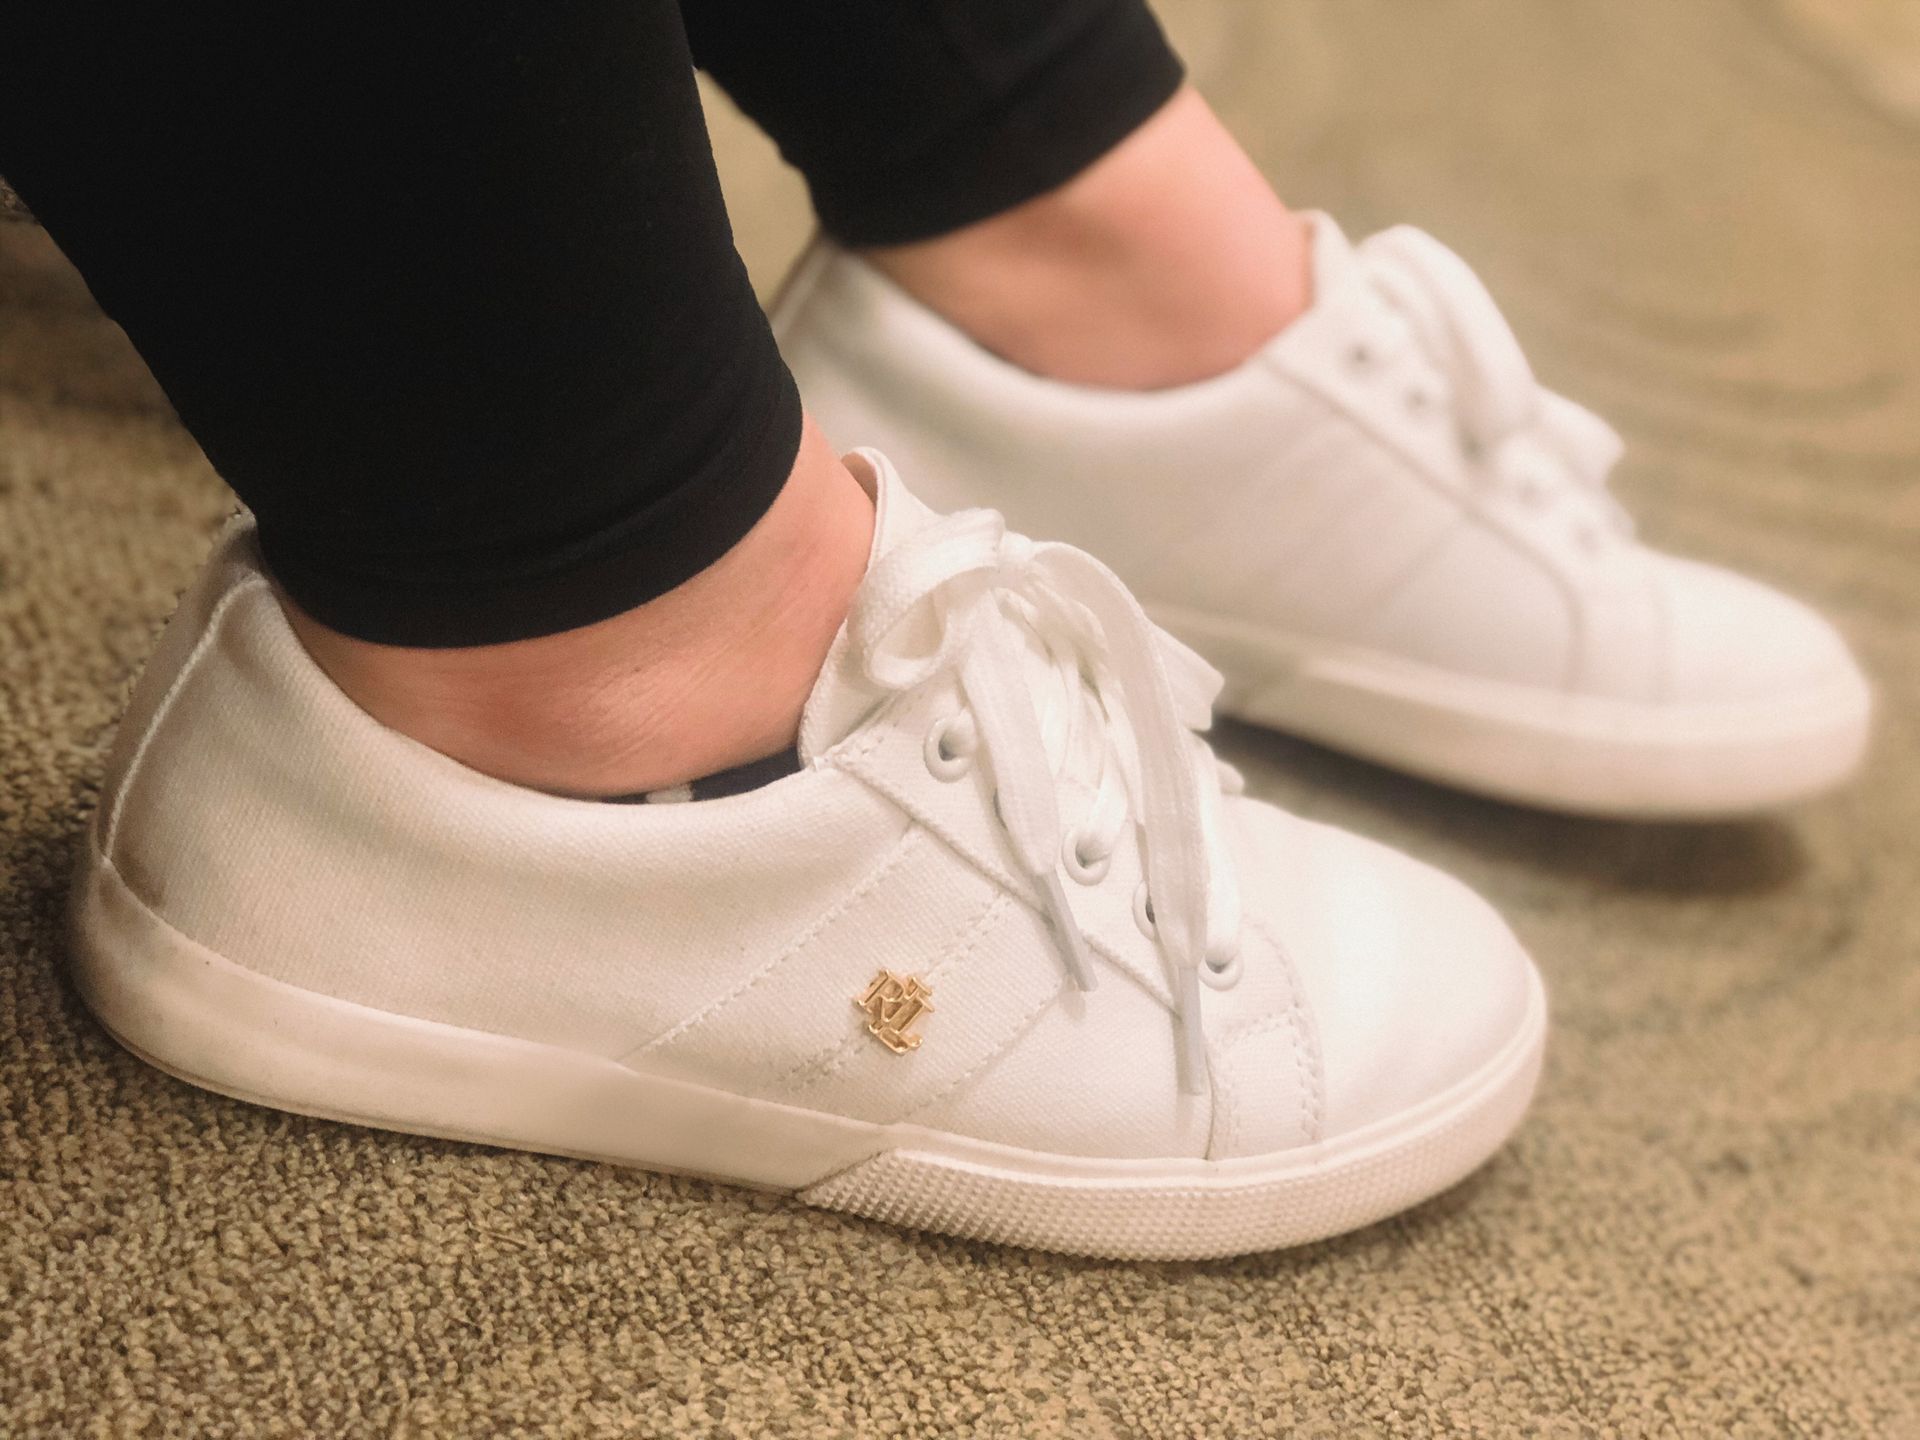 my favorite white sneakers - Macys 